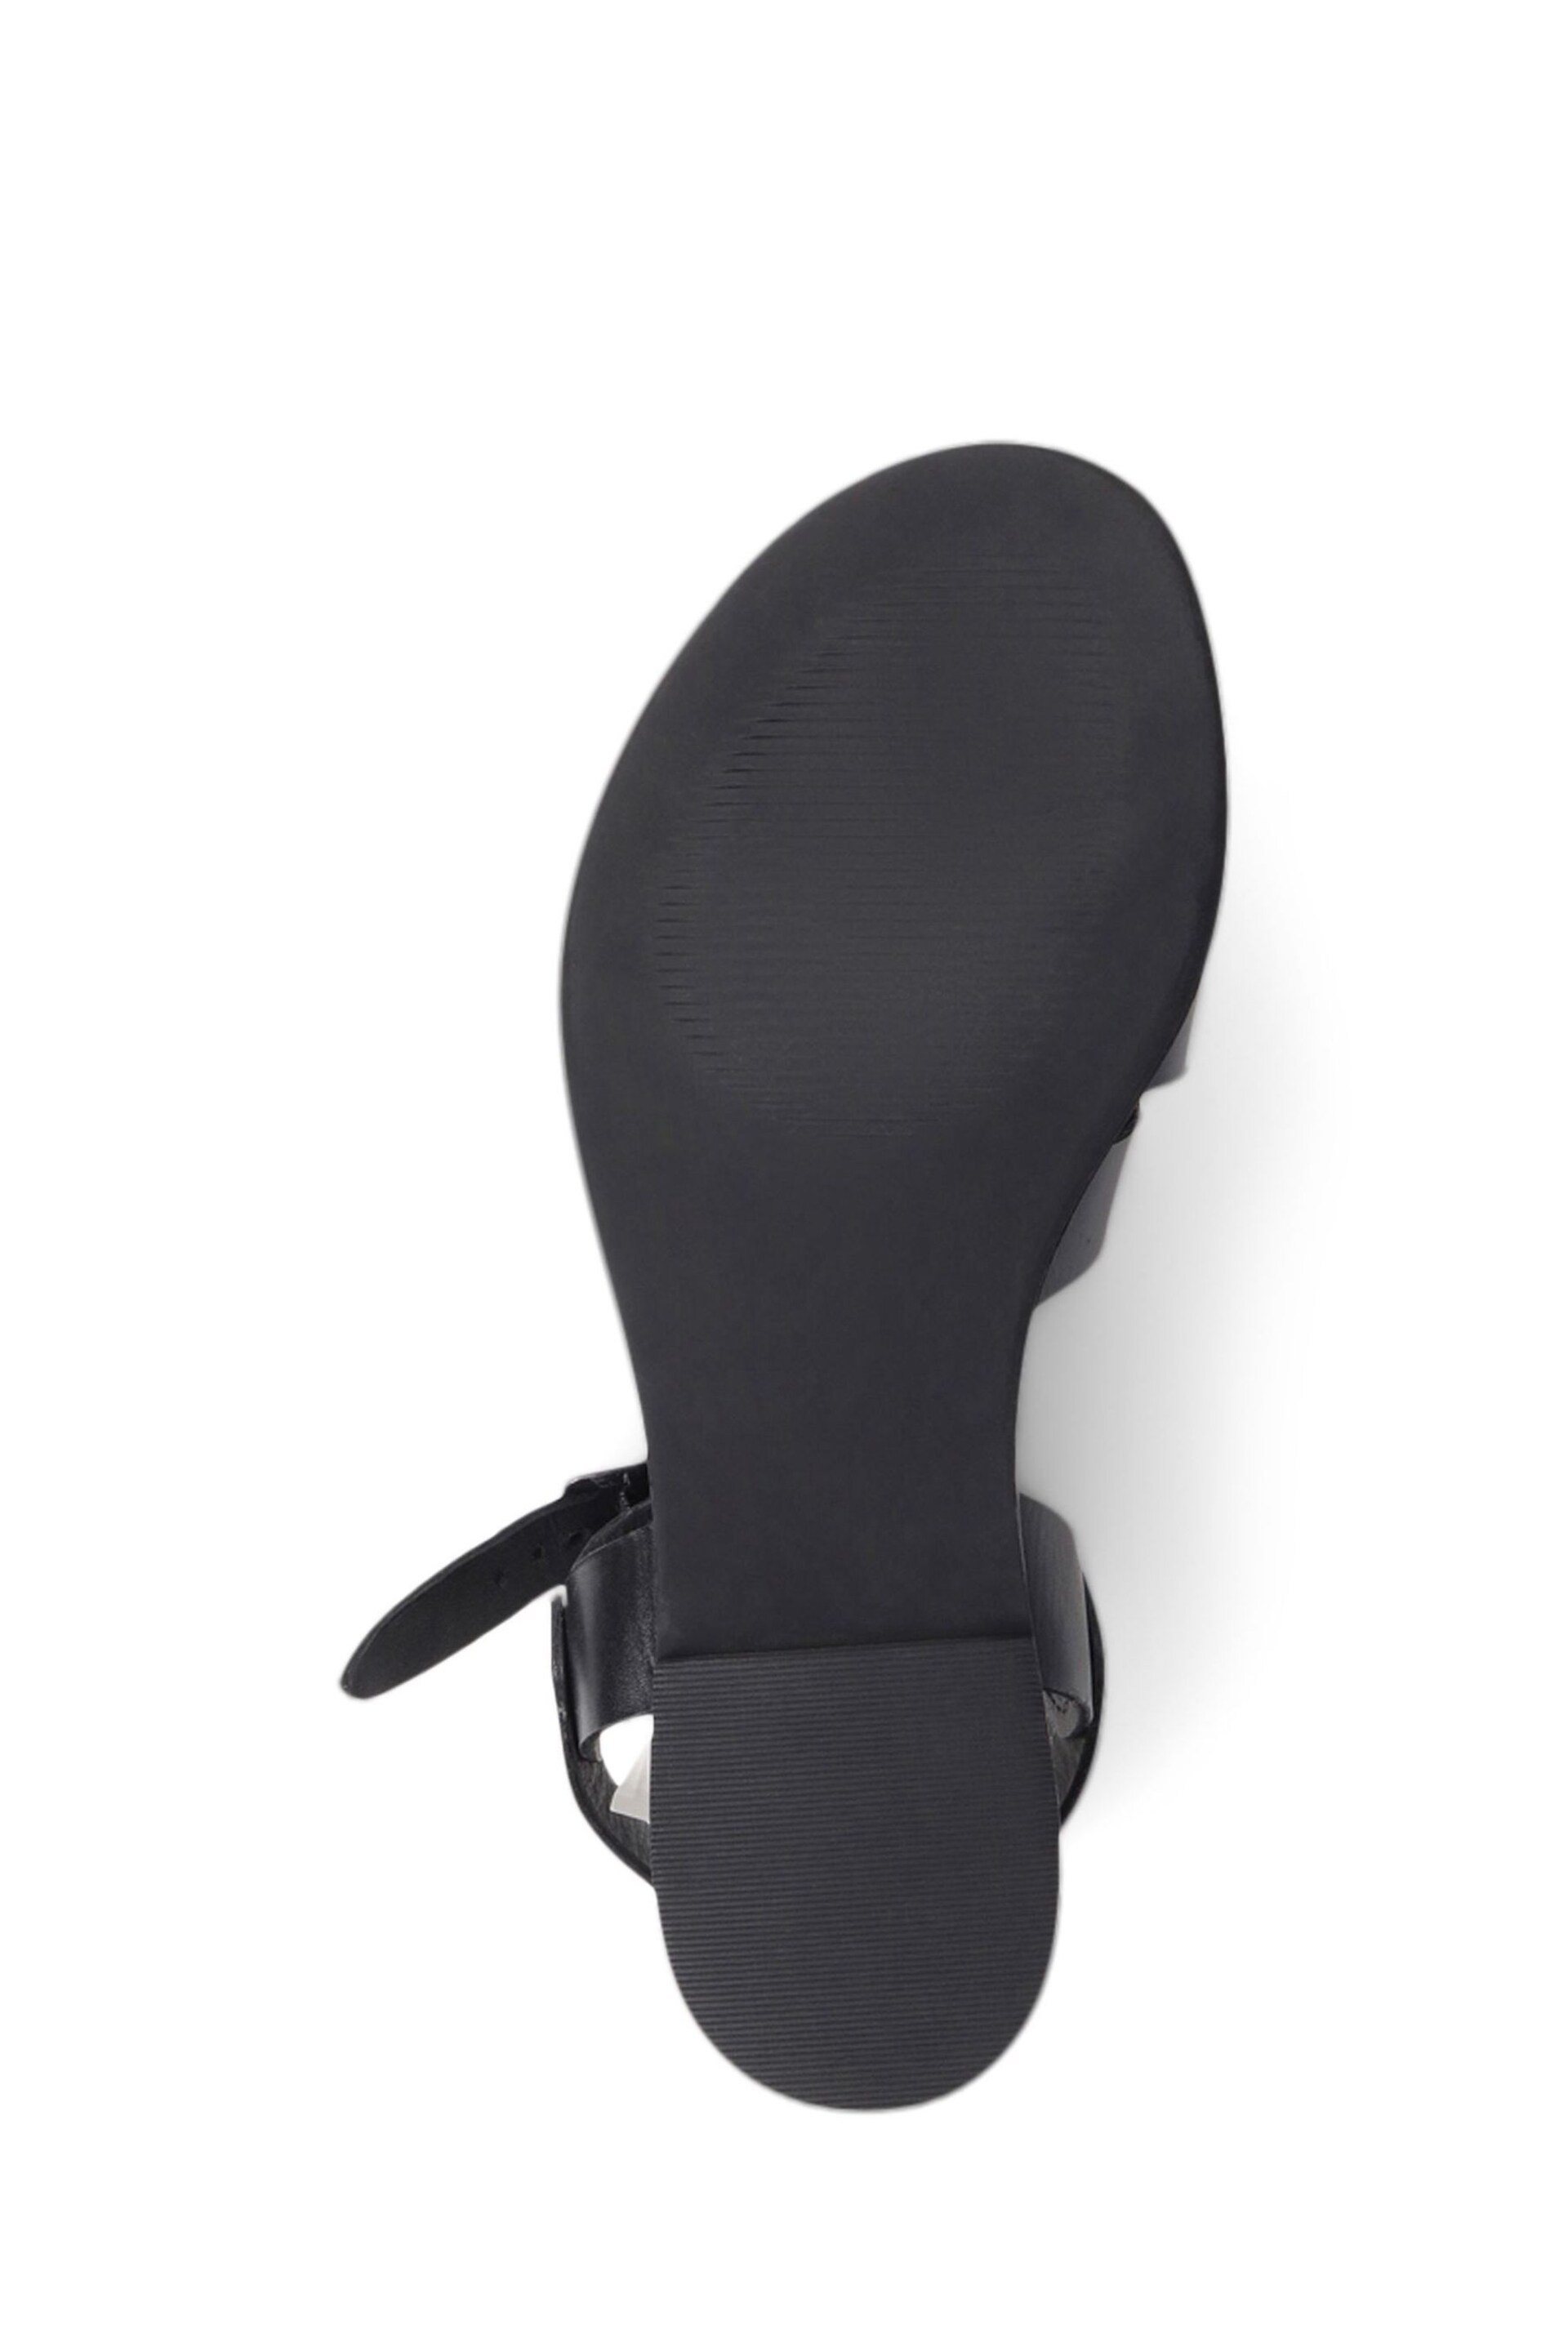 Jones Bootmaker Inez Flat Black Sandals - Image 5 of 5